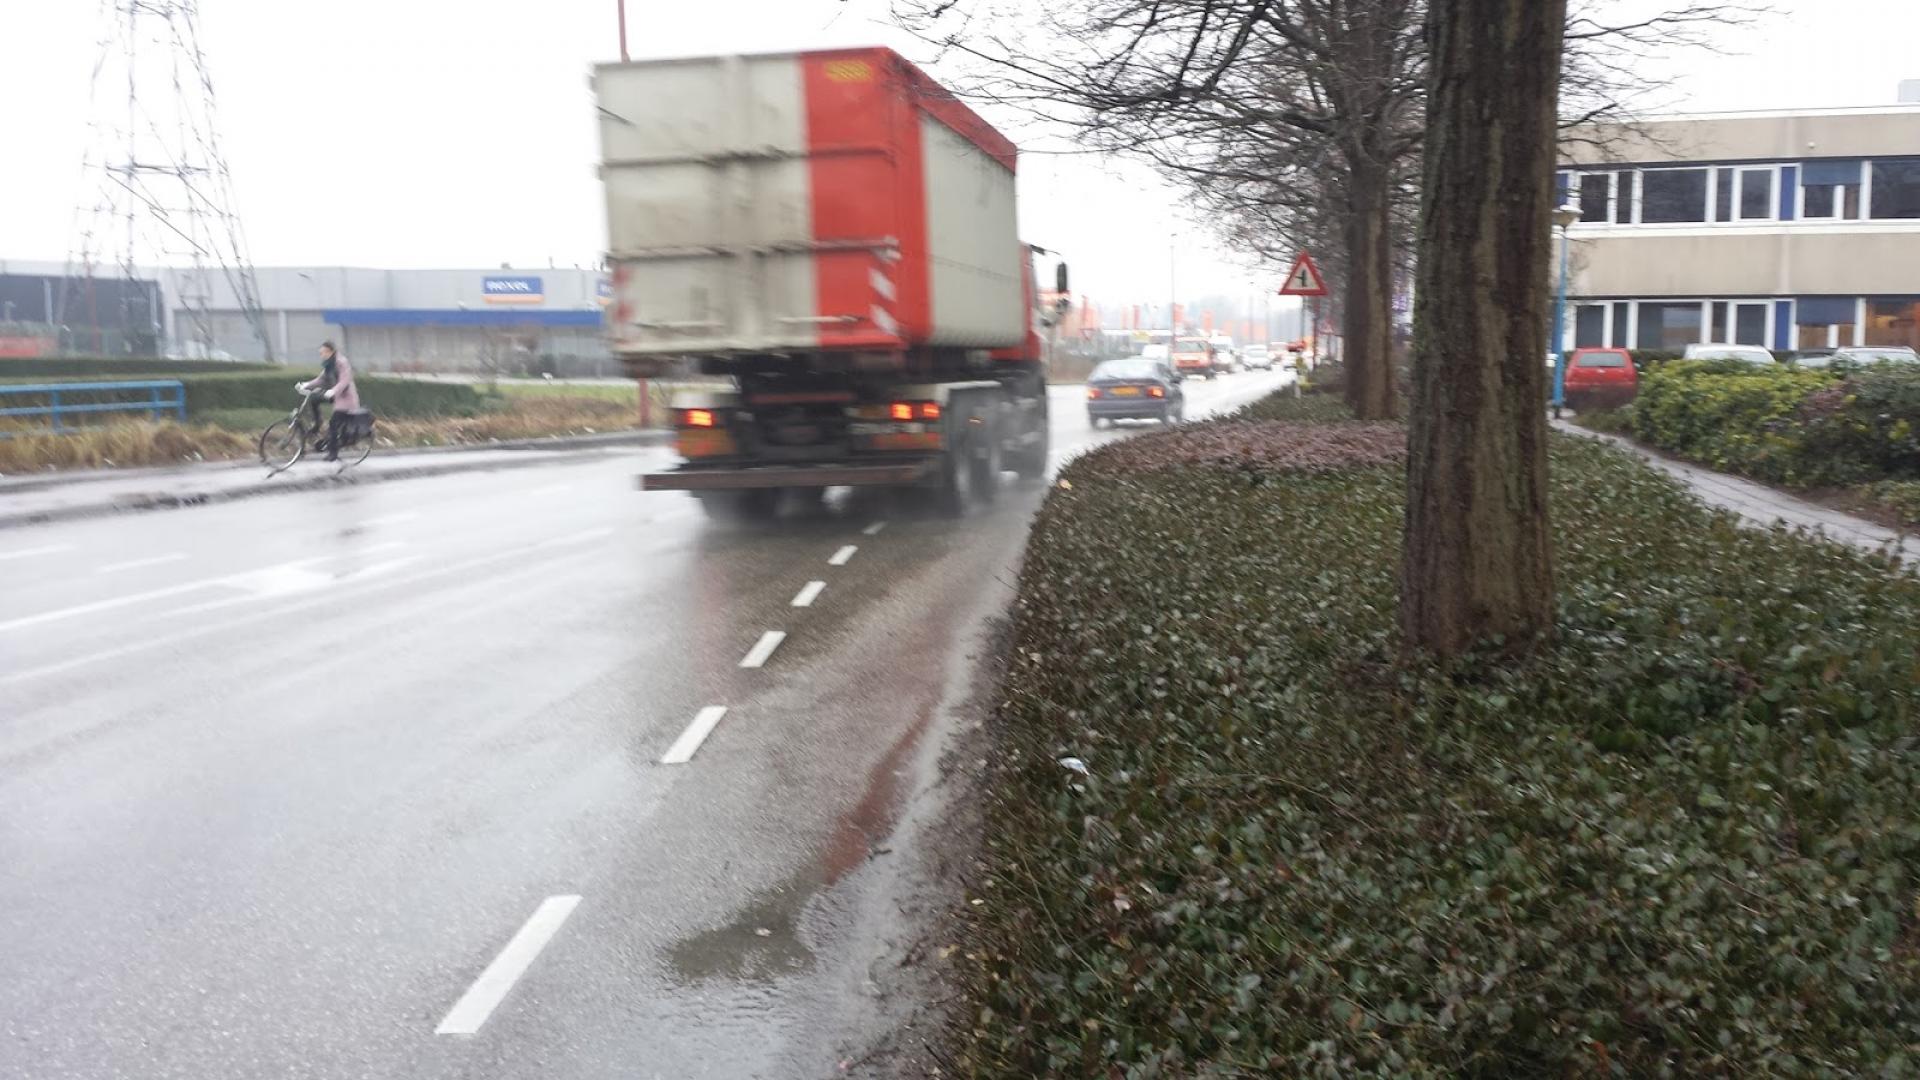 Ravenswade op het Liesboschterrein. Deze voor fietsers onveilige situatie moet snel opgelost worden. (foto: Fietsersbond Nieuwegein)